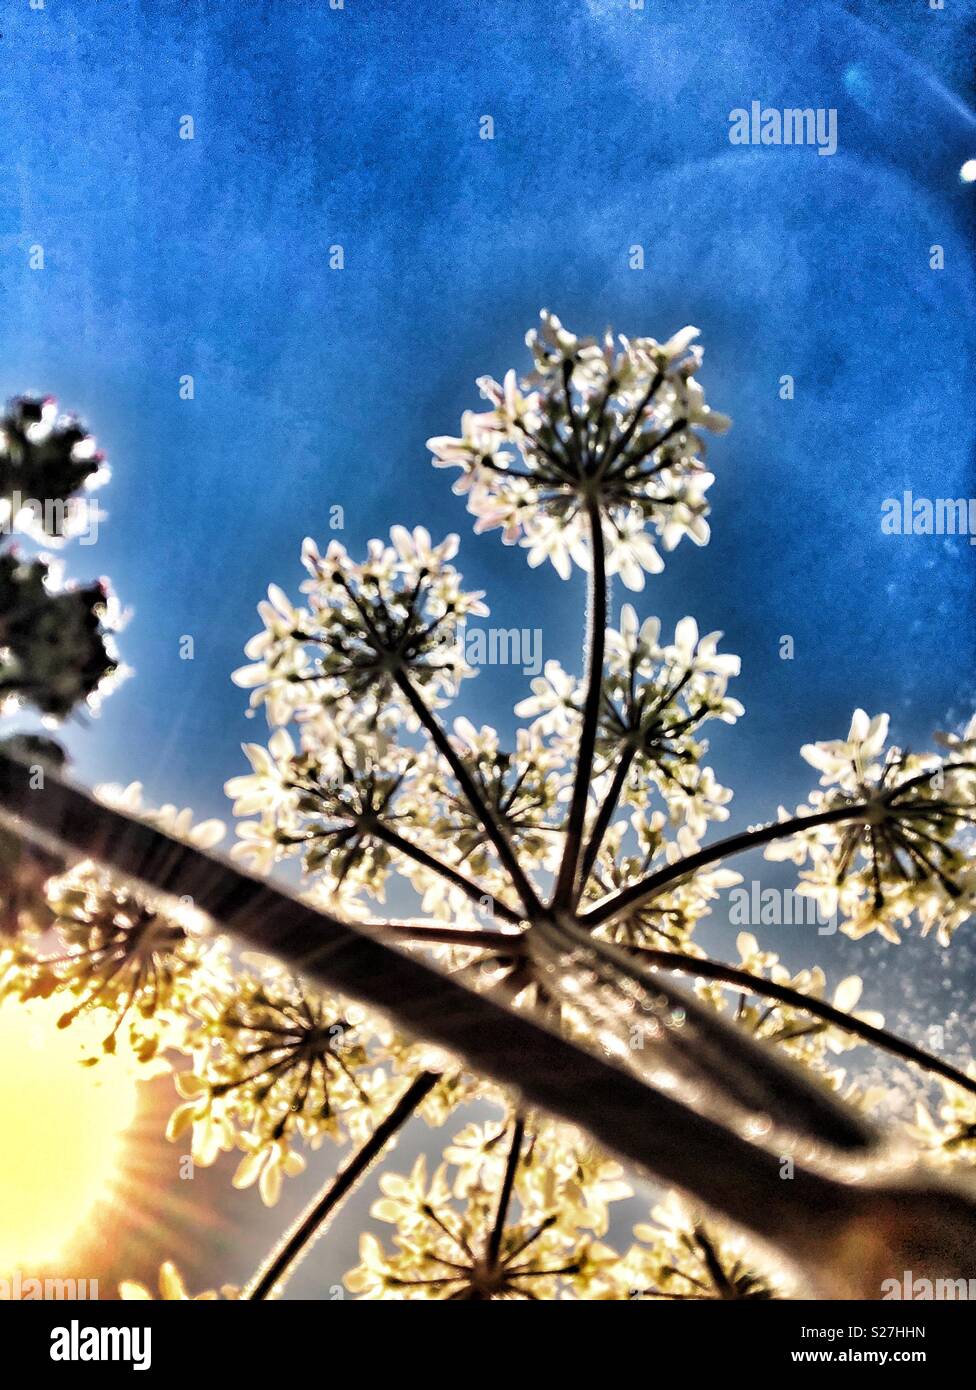 Umbellifer von unten mit Sunburst - Sommer Blumen Stockfoto